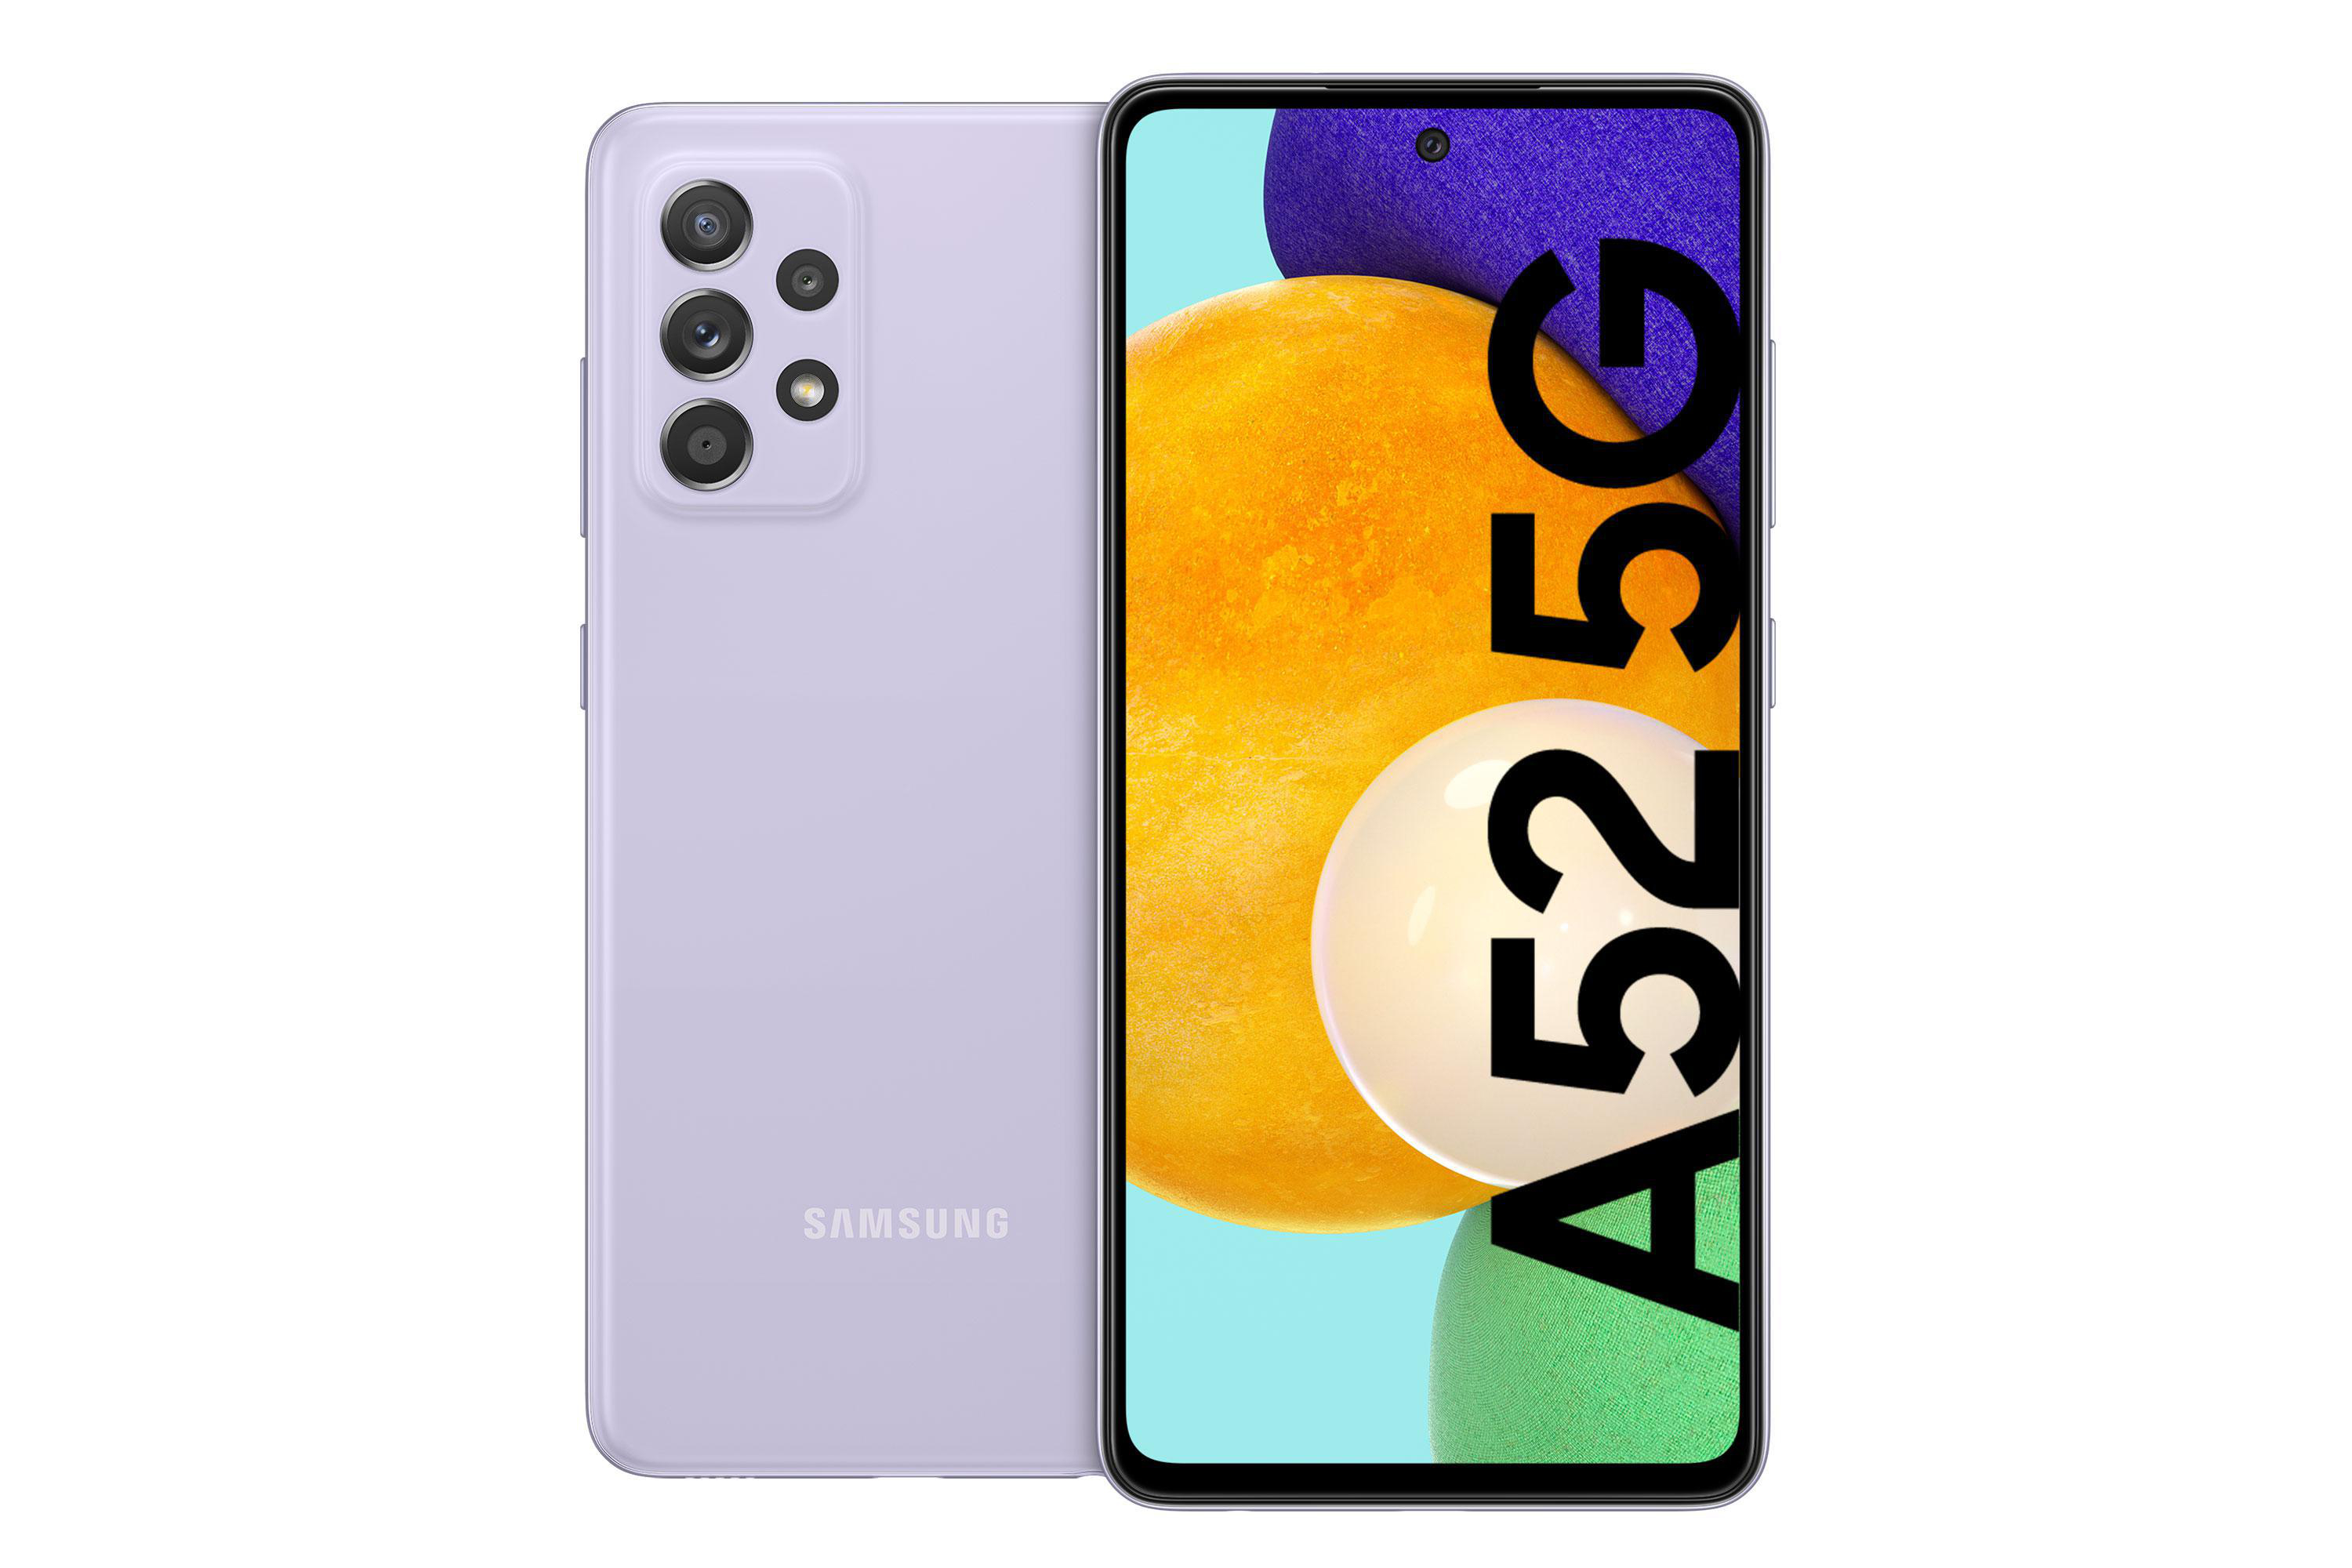 SAMSUNG Violet Awesome 256 GB Dual A52 Galaxy SIM 5G